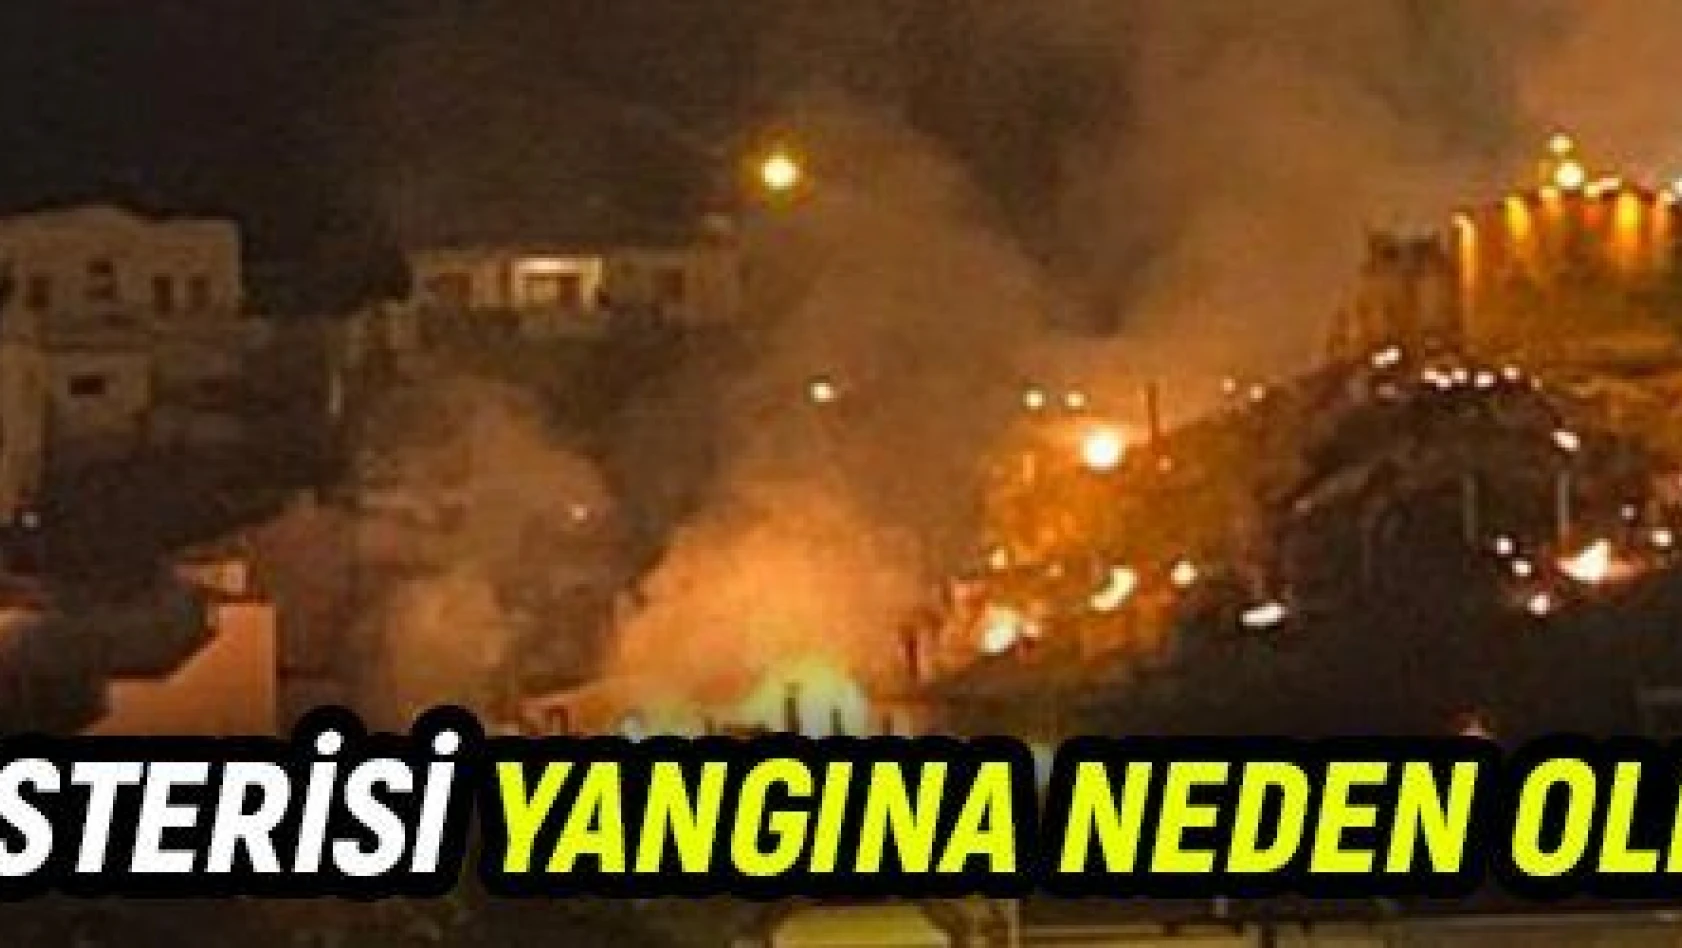 Nevşehir'de havai fişek gösterisi yangına neden oldu